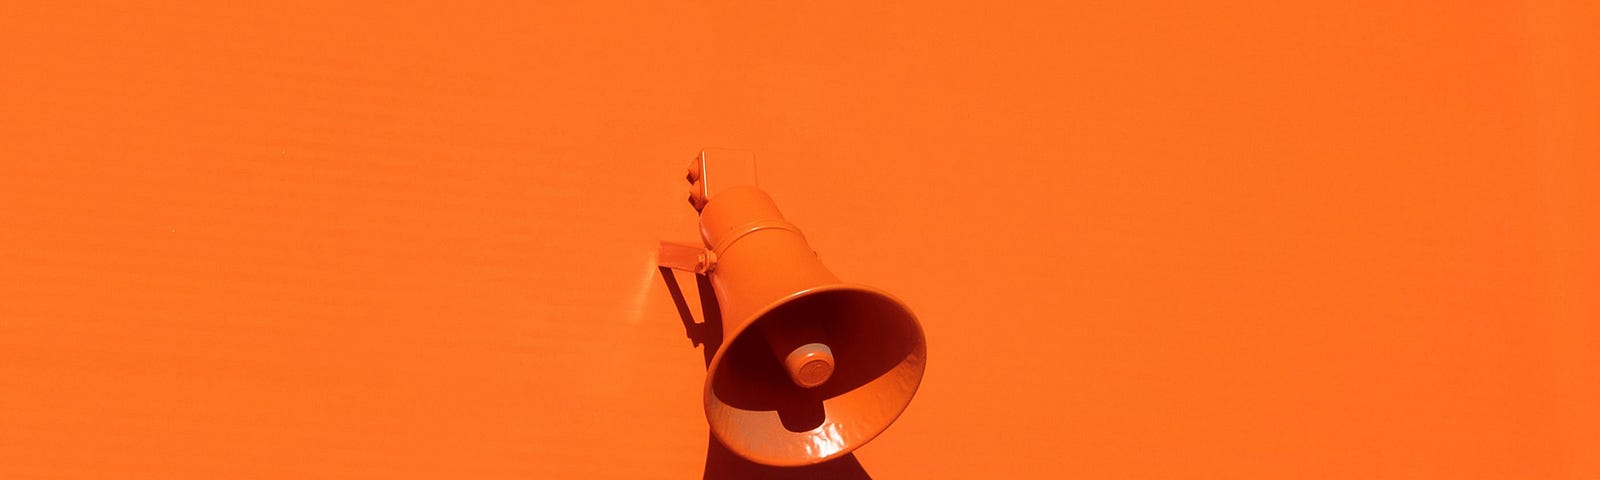 Orange megaphone on orange wall